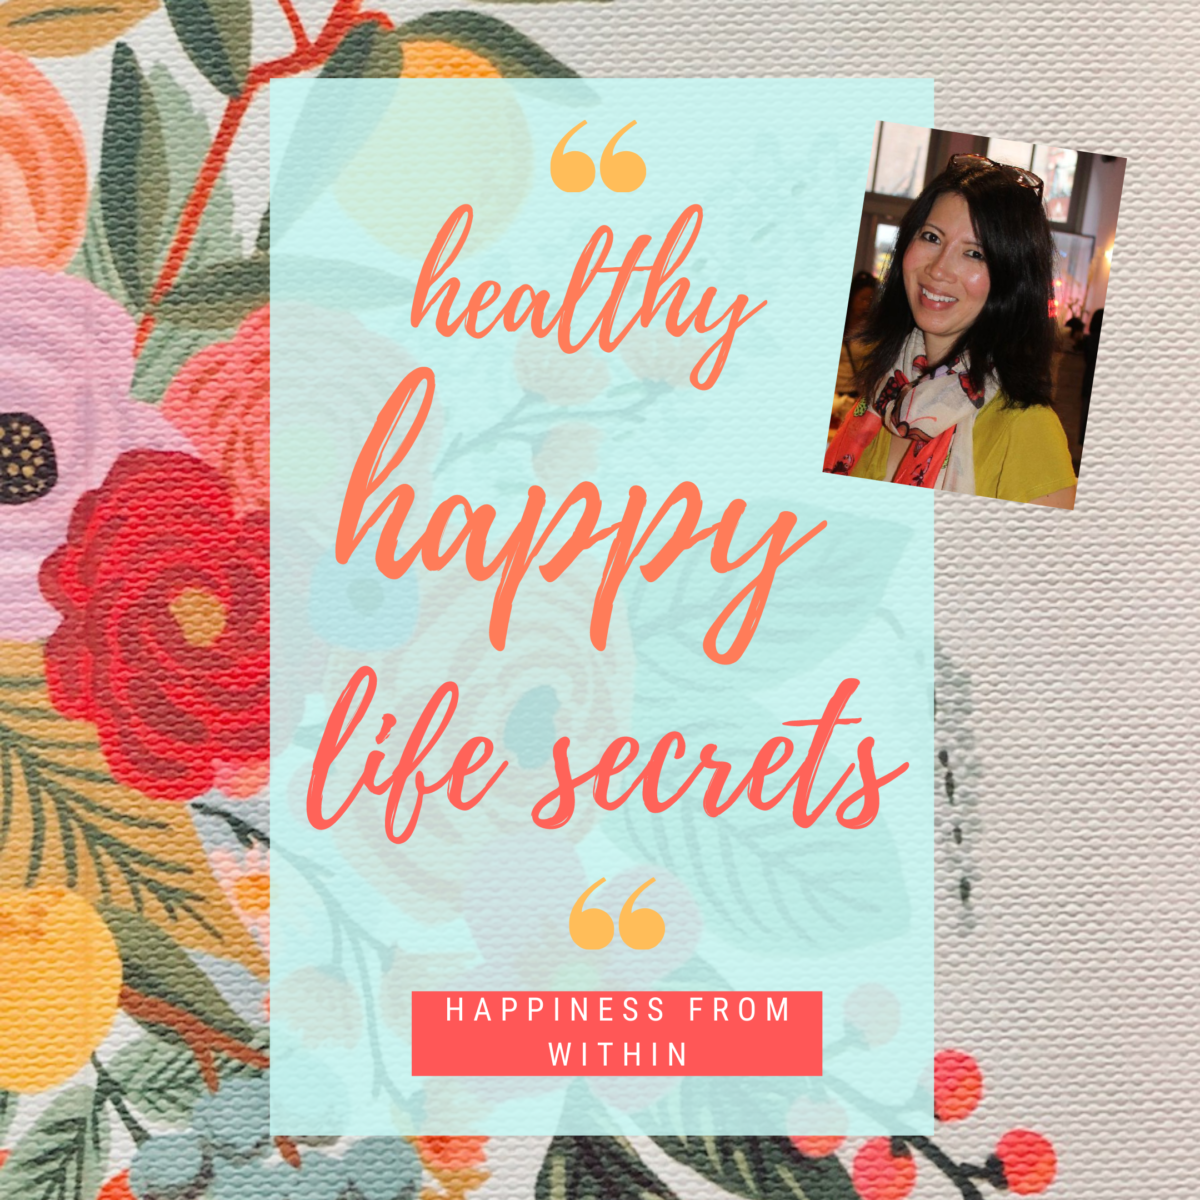 Healthy Happy Life Secrets 